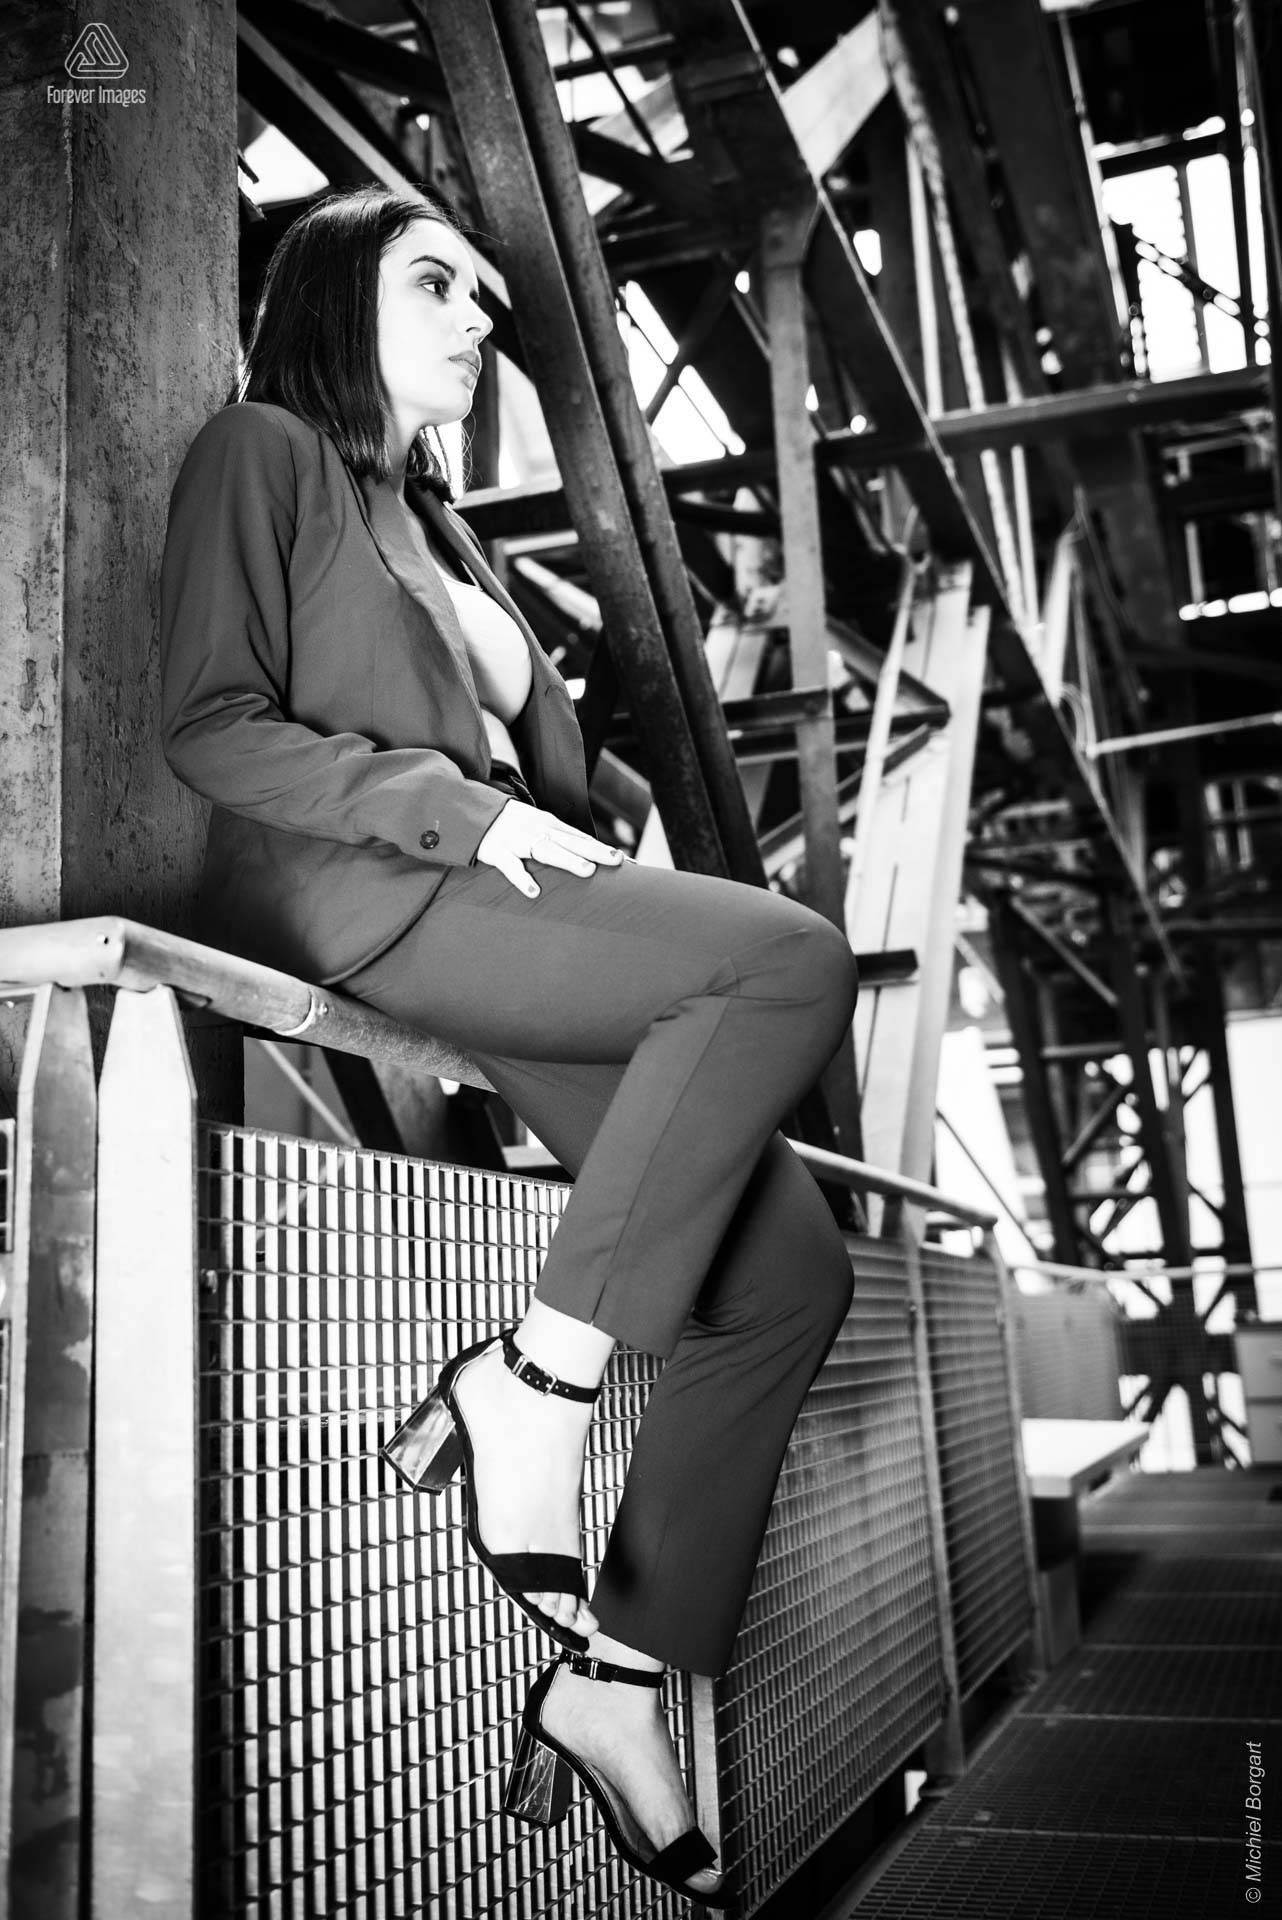 Portretfoto zwart-wit dame zittend op railing | Isis Vaandrager NDSM Werf Amsterdam | Portretfotograaf Michiel Borgart - Forever Images.